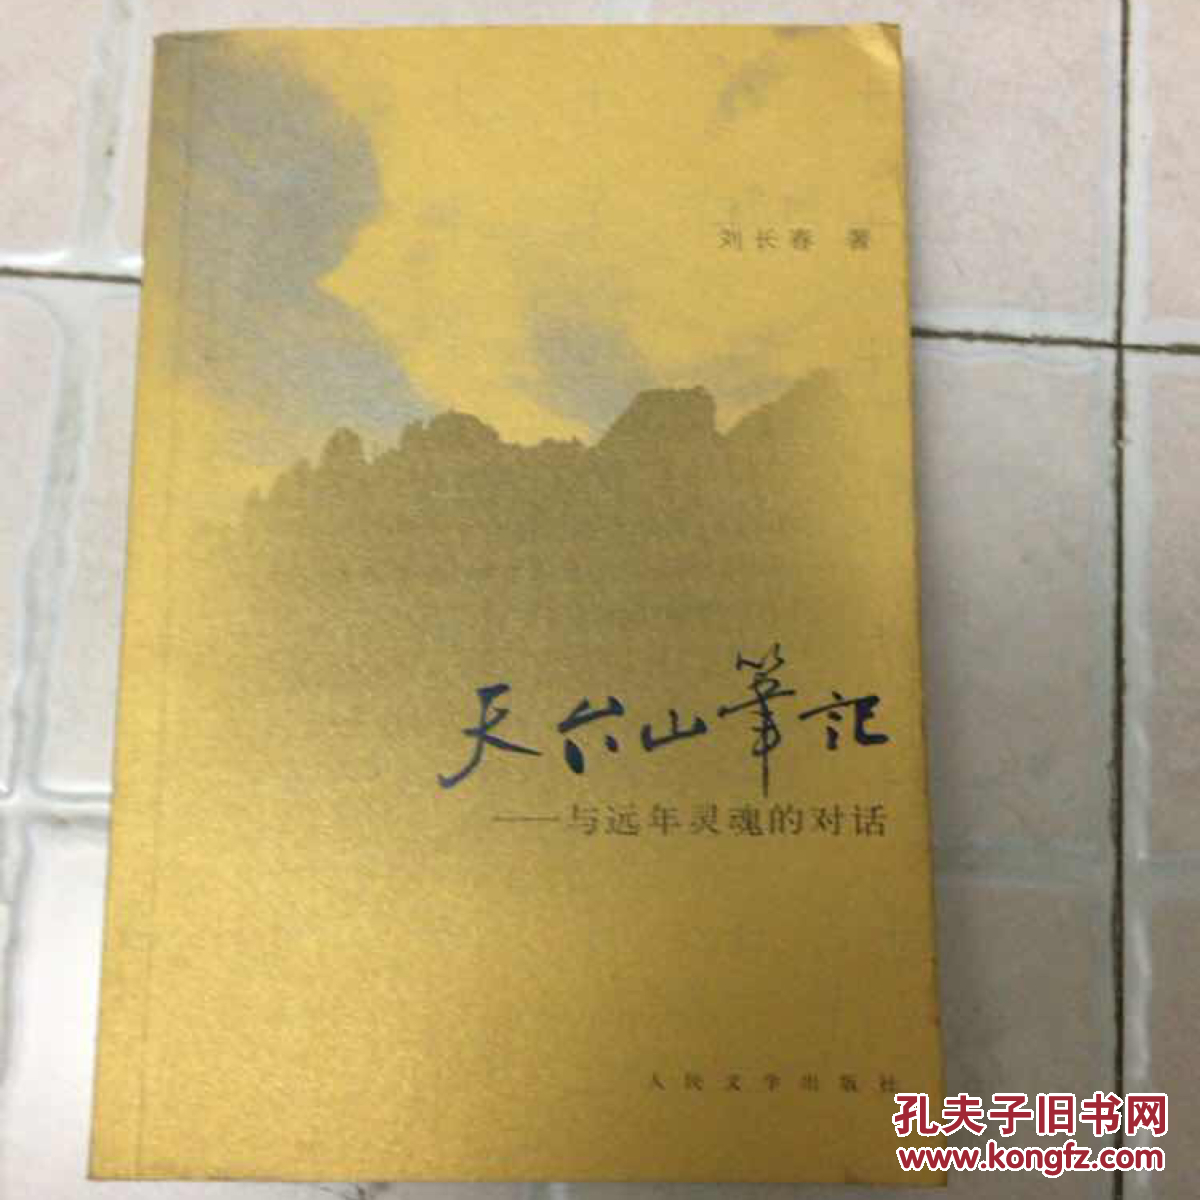 正版现货 天台山笔记 与远年灵魂的对话 刘长春 著 人民文学出版社 图是实物